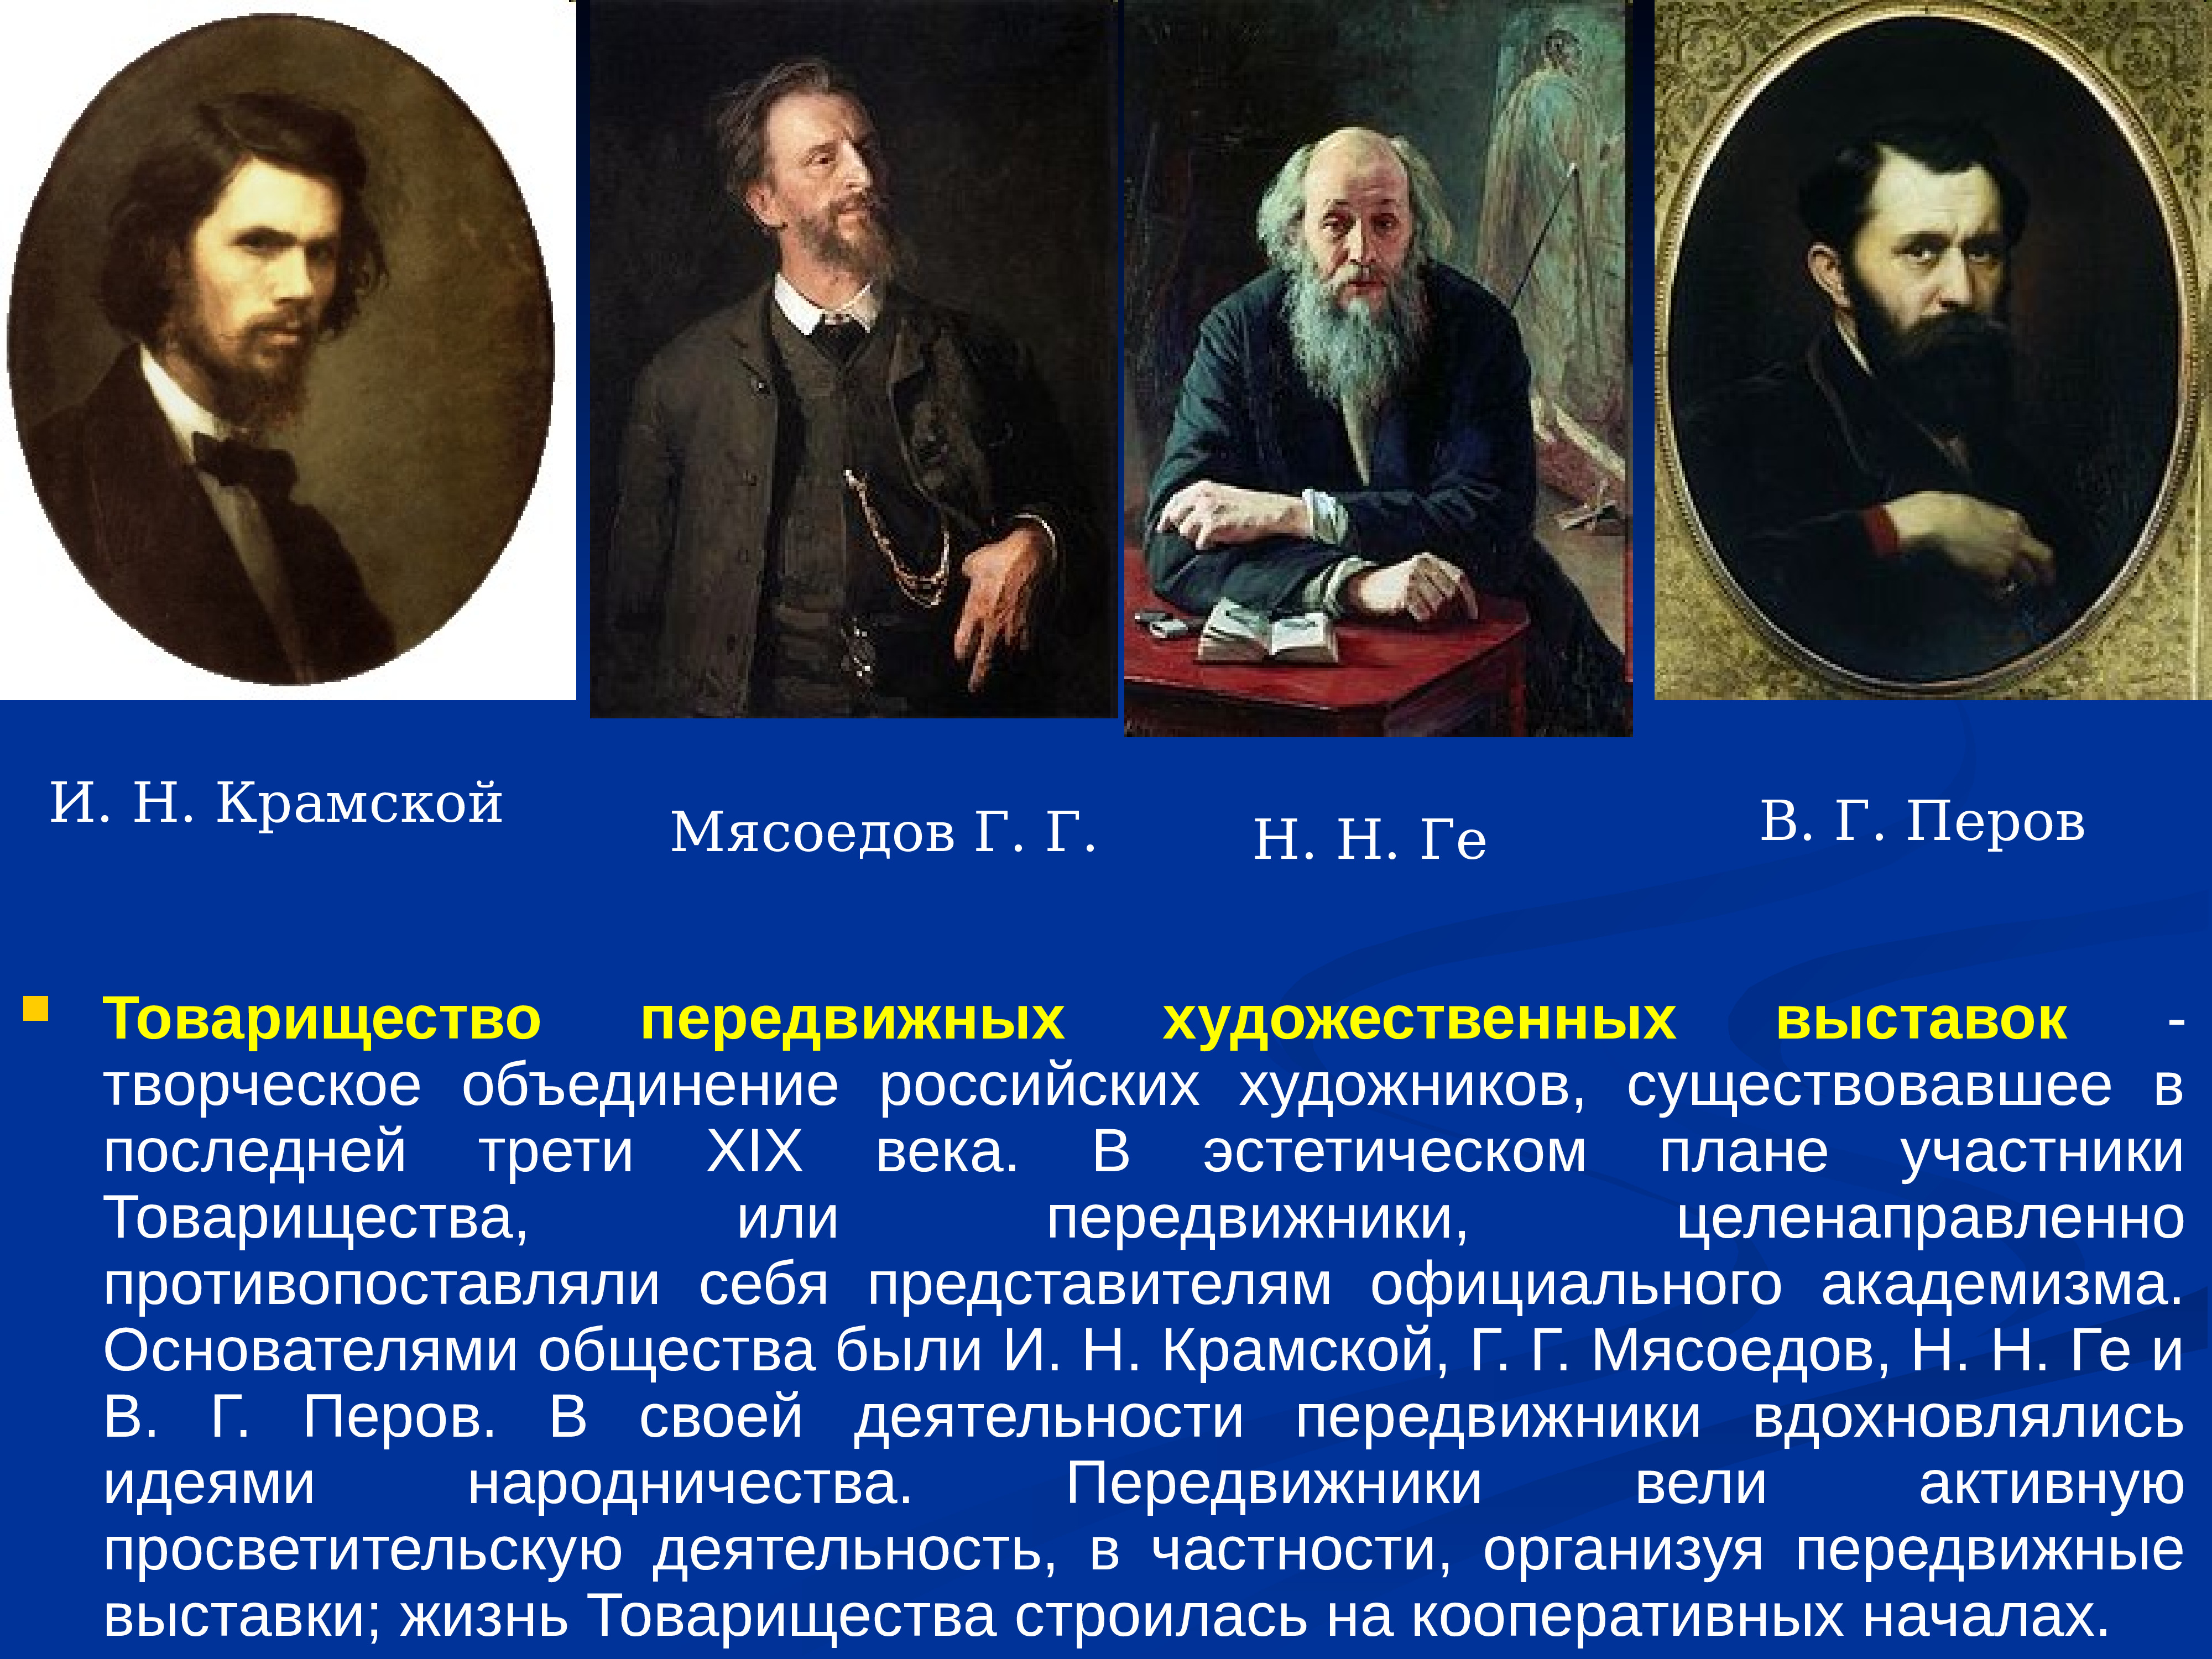 Русская культура 2 половины 19 века